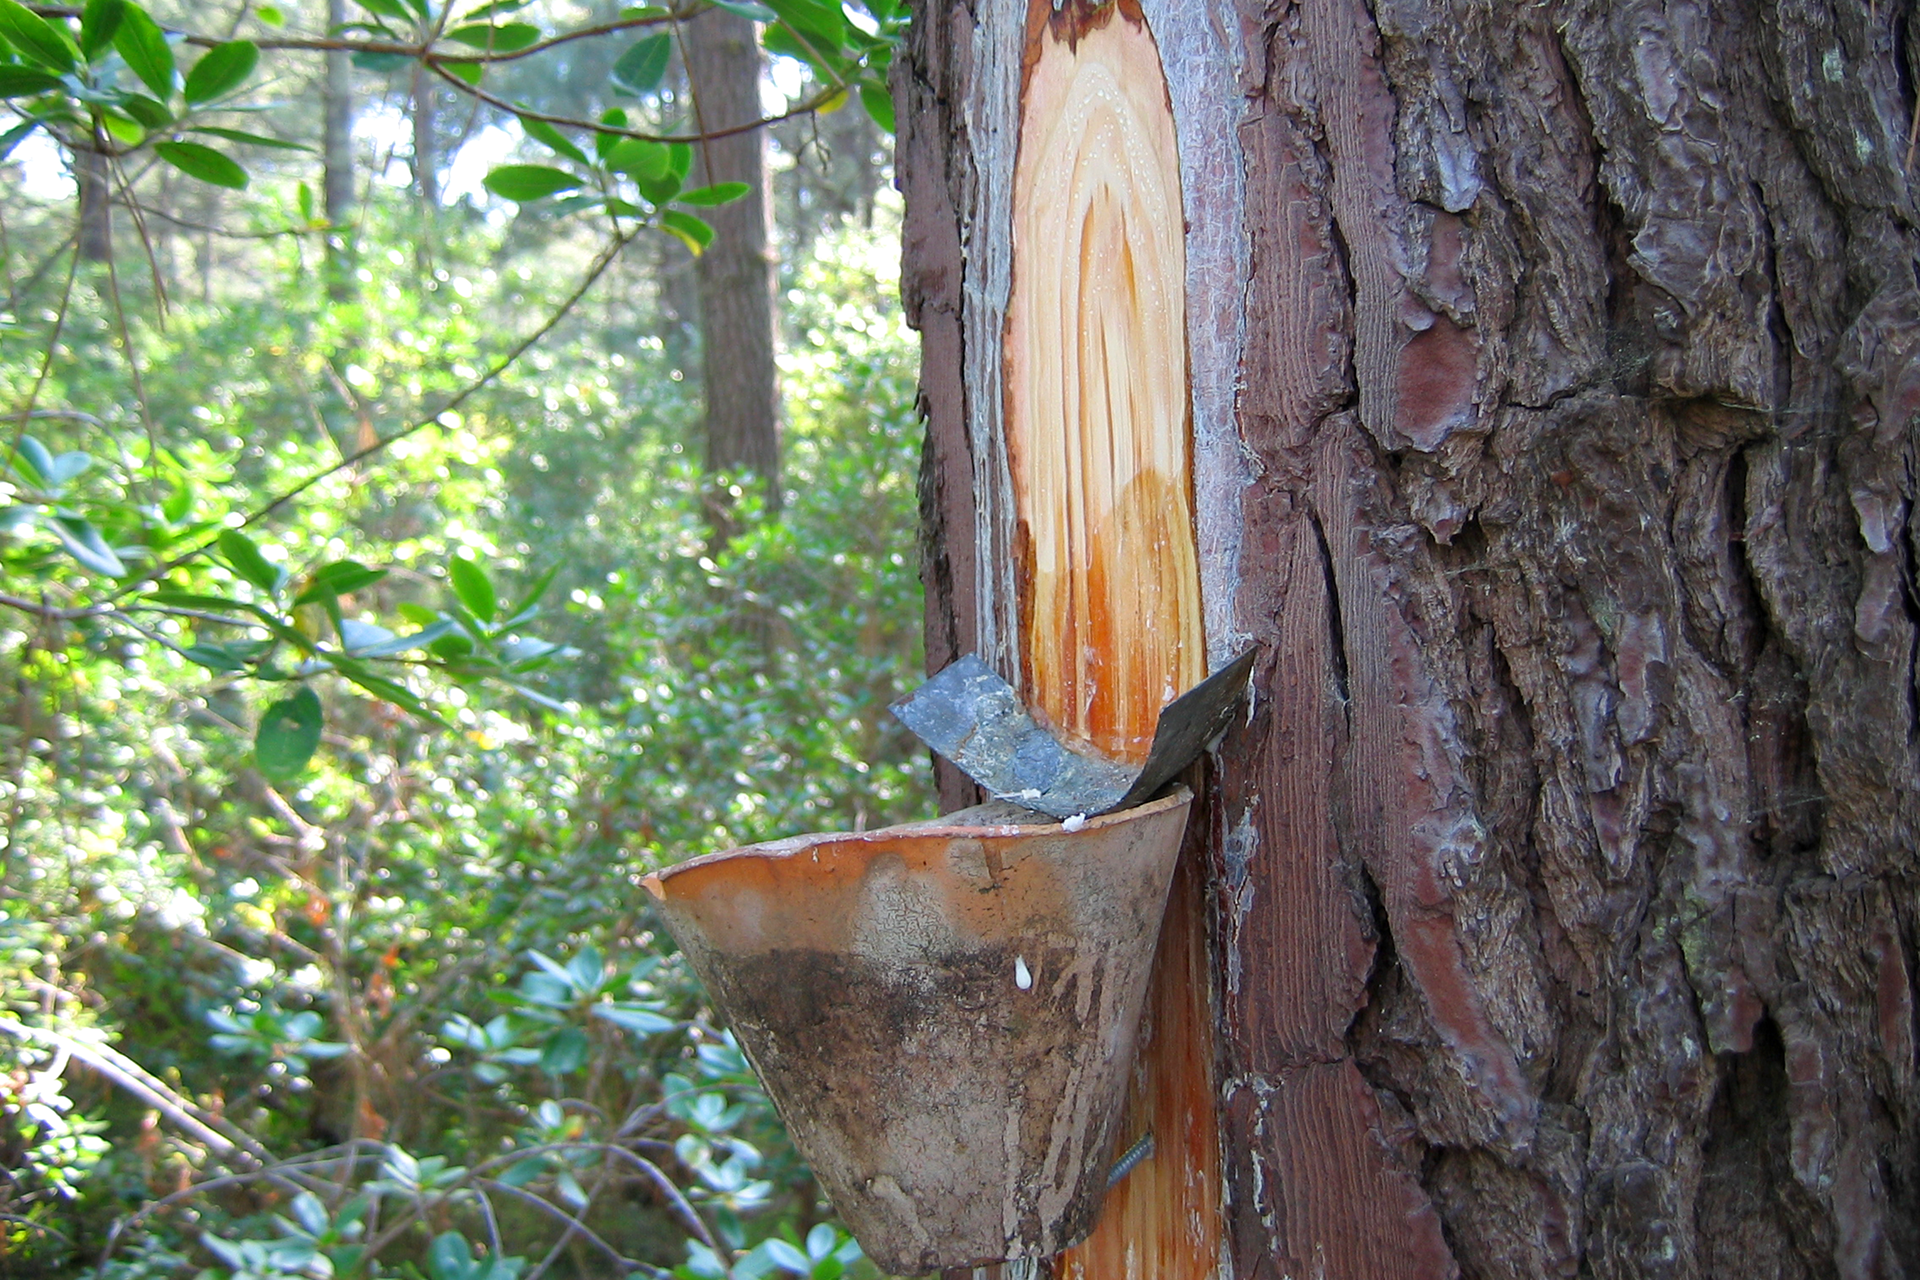 Fotografia przedstawia nacięty wzdłuż pień drzewa iglastego, znajdujący się w lesie. Pod nacięciem znajduje się stożkowaty pojemnik. Nad nim umocowano wygiętą blaszkę do zbierania ściekających z nacięcia kropli żywicy.